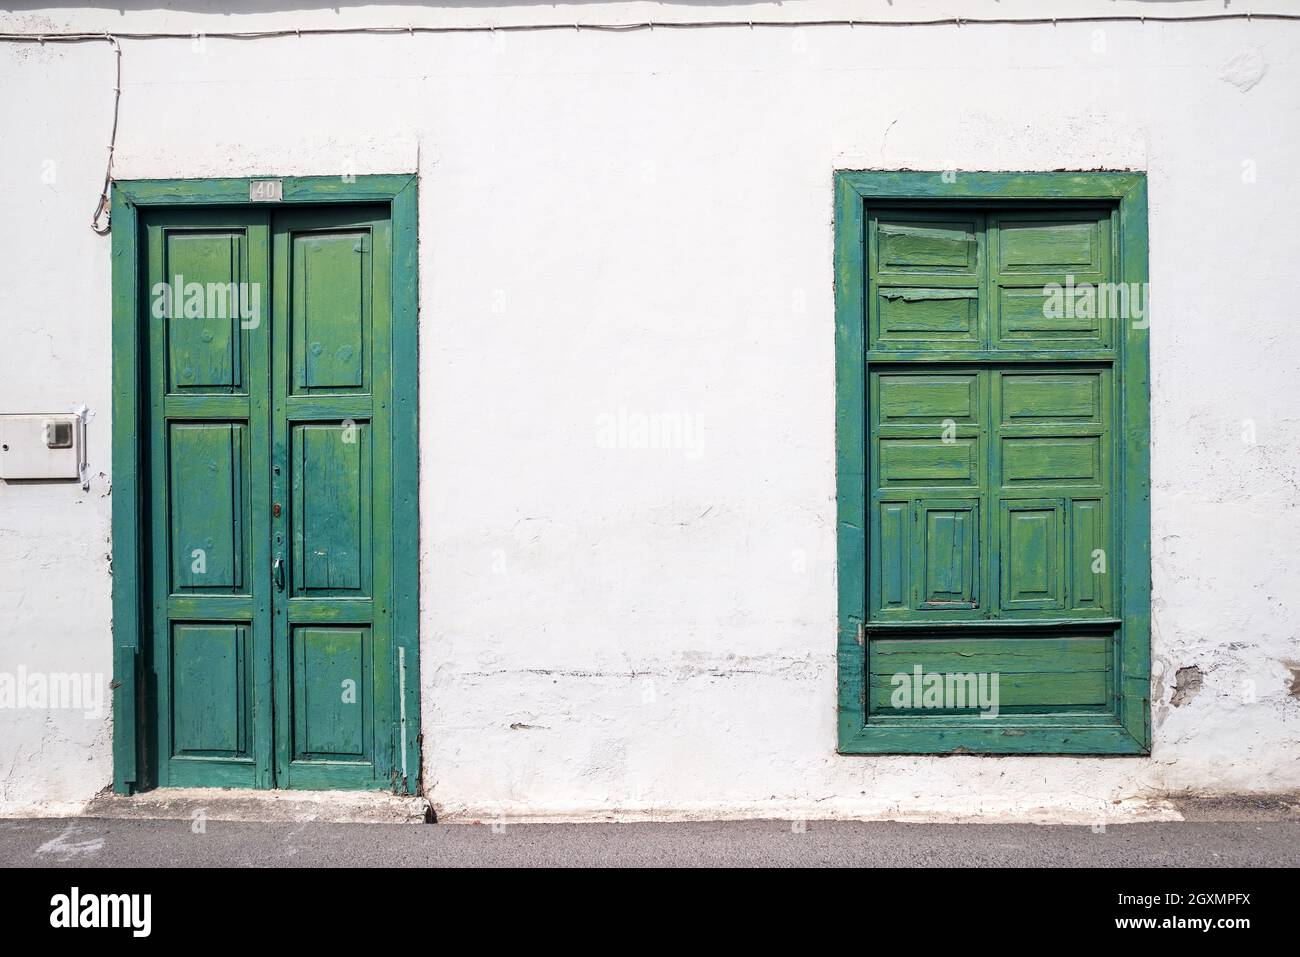 Maison blanche typique de Lanzarote avec des volets verts à Haria - Lanzarote, îles Canaries Banque D'Images